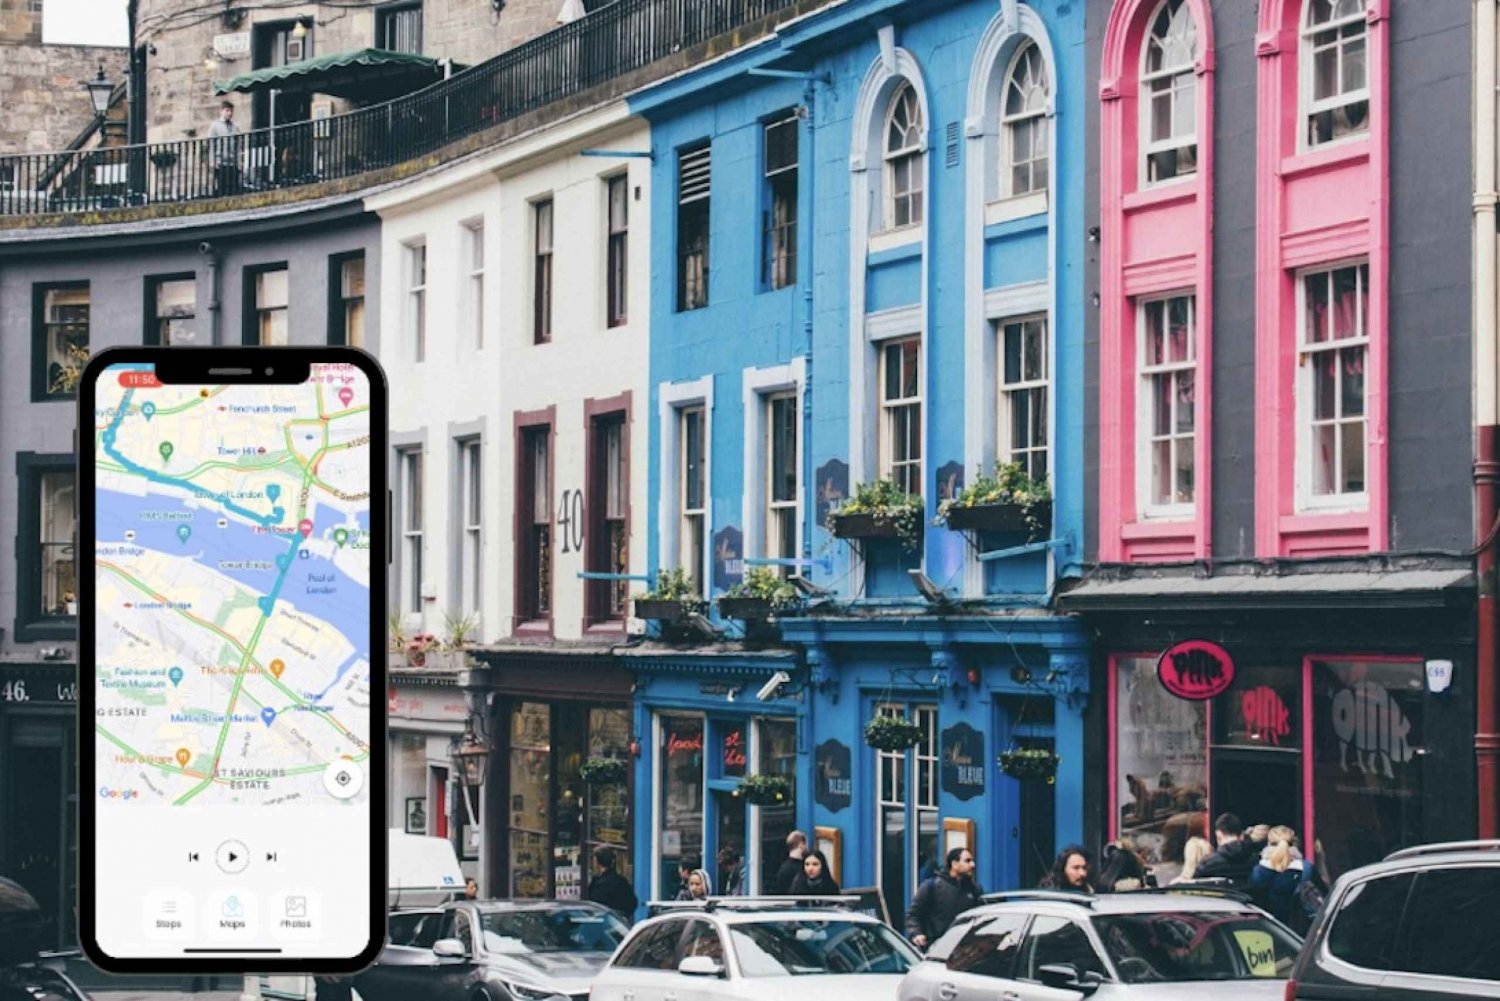 Harry Potter a Edimburgo: tour guidato con app per smartphone